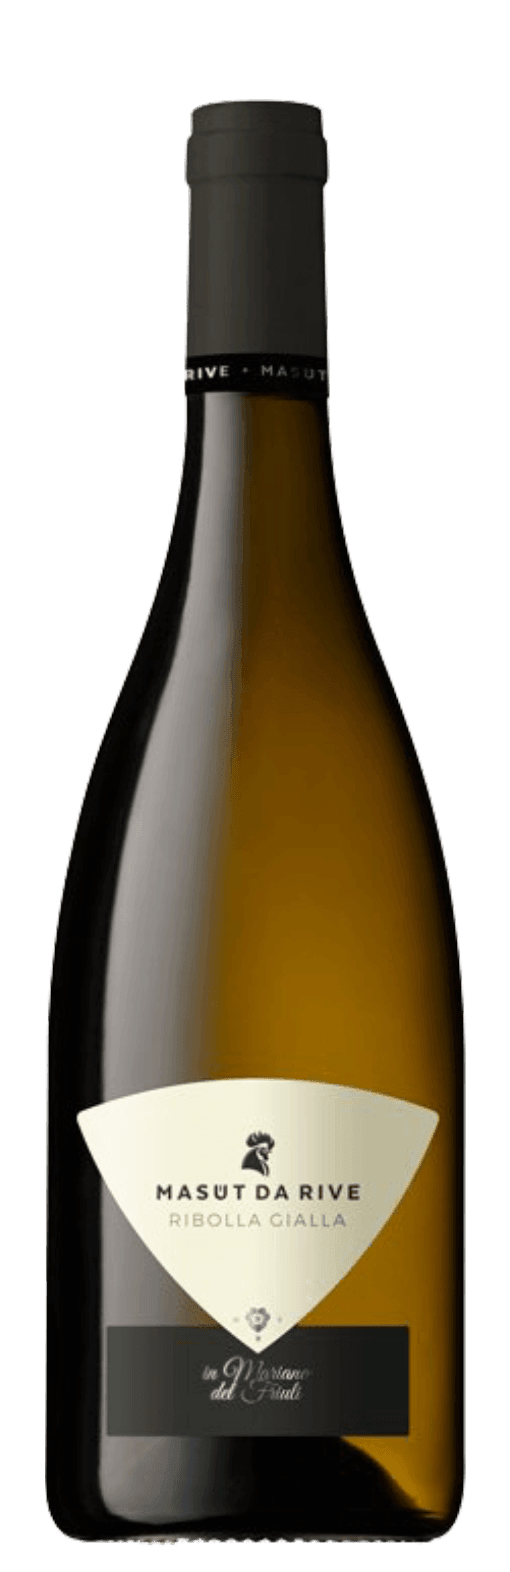 Italian Wine - Ribolla Gialla Collio DOC Masut de Rive 2014 - Guidi Wines